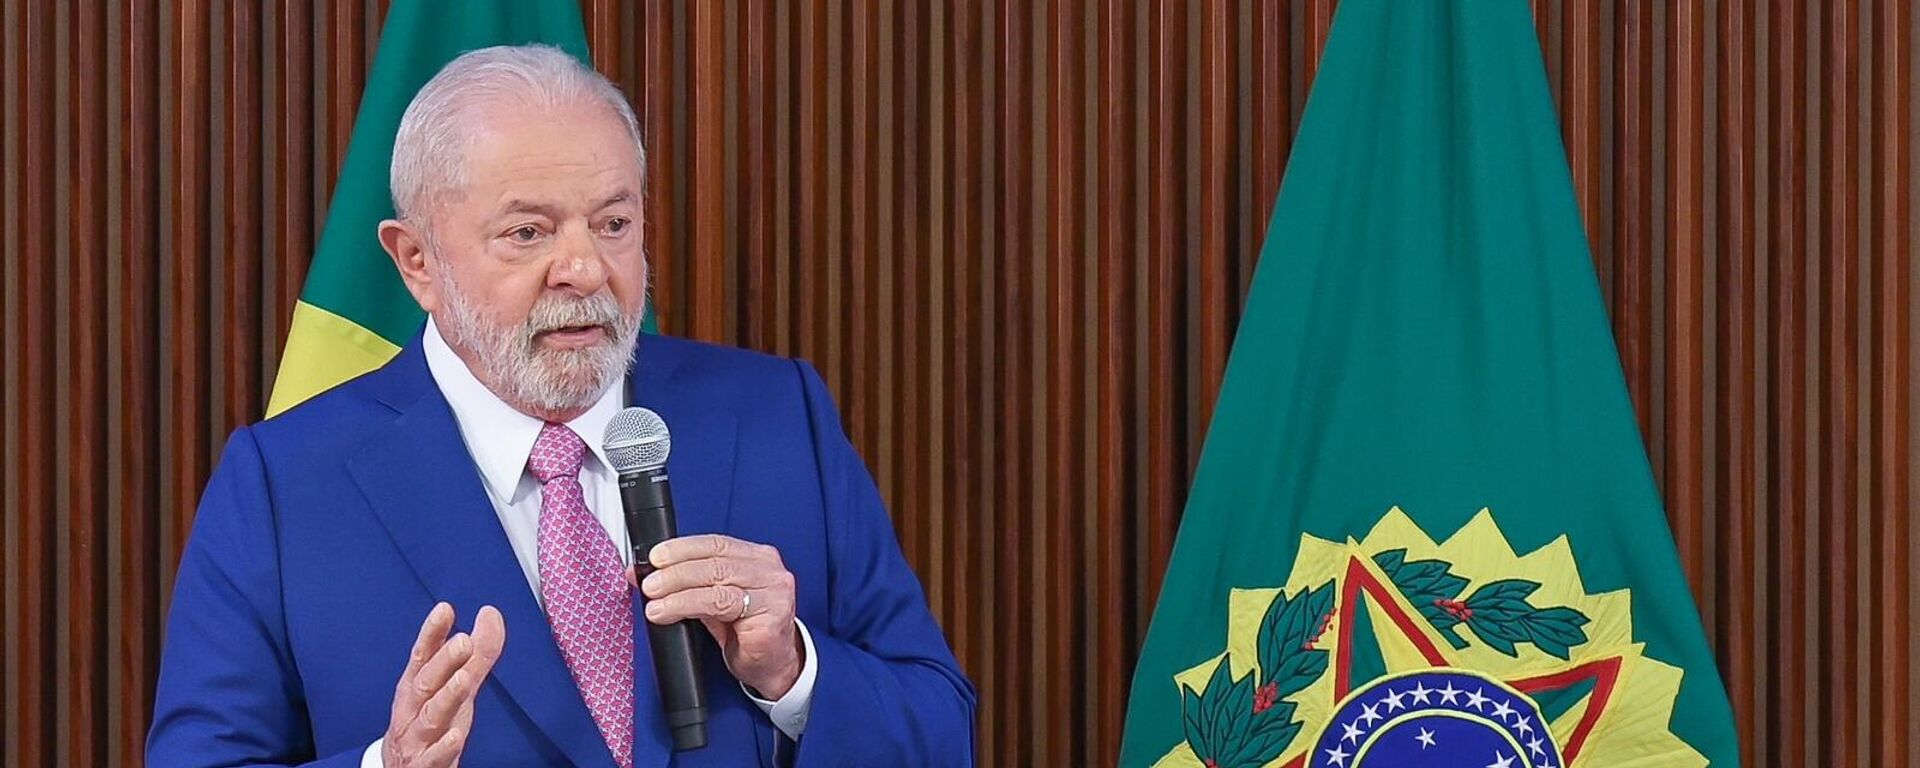 Luiz Inácio Lula da Silva (PT) discursa na primeira reunião ministerial de seu governo. Brasília (DF), 6 de janeiro de 2023 - Sputnik Brasil, 1920, 15.02.2023